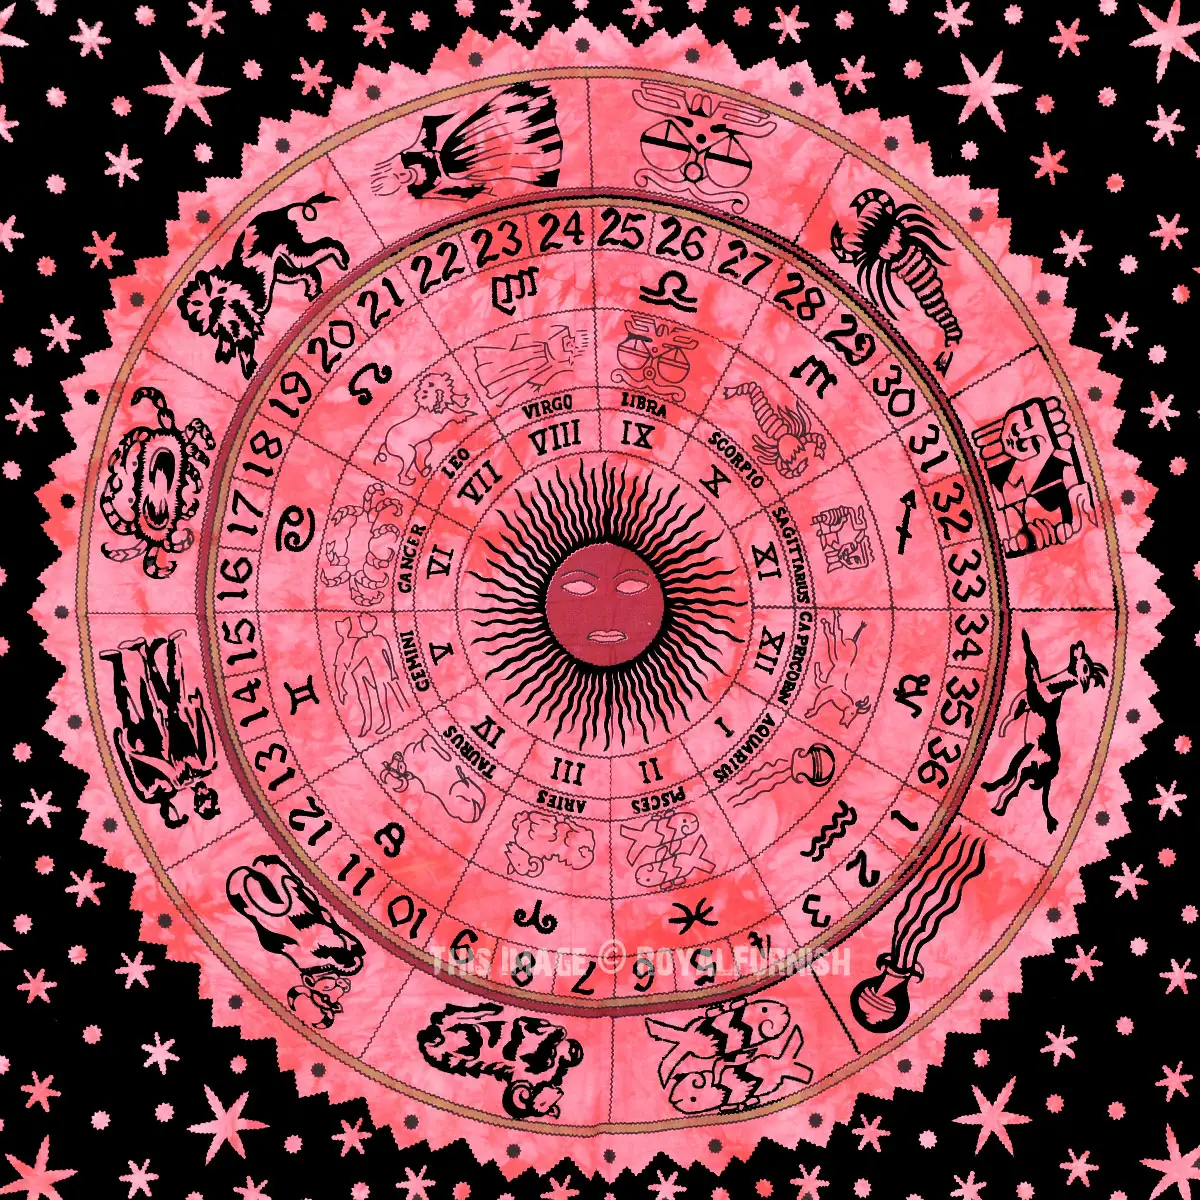 インドの干支占星術壁掛け星占いタペストリー投げヒッピーベッドカバーヒッピー壁掛け曼荼羅装飾装飾アート